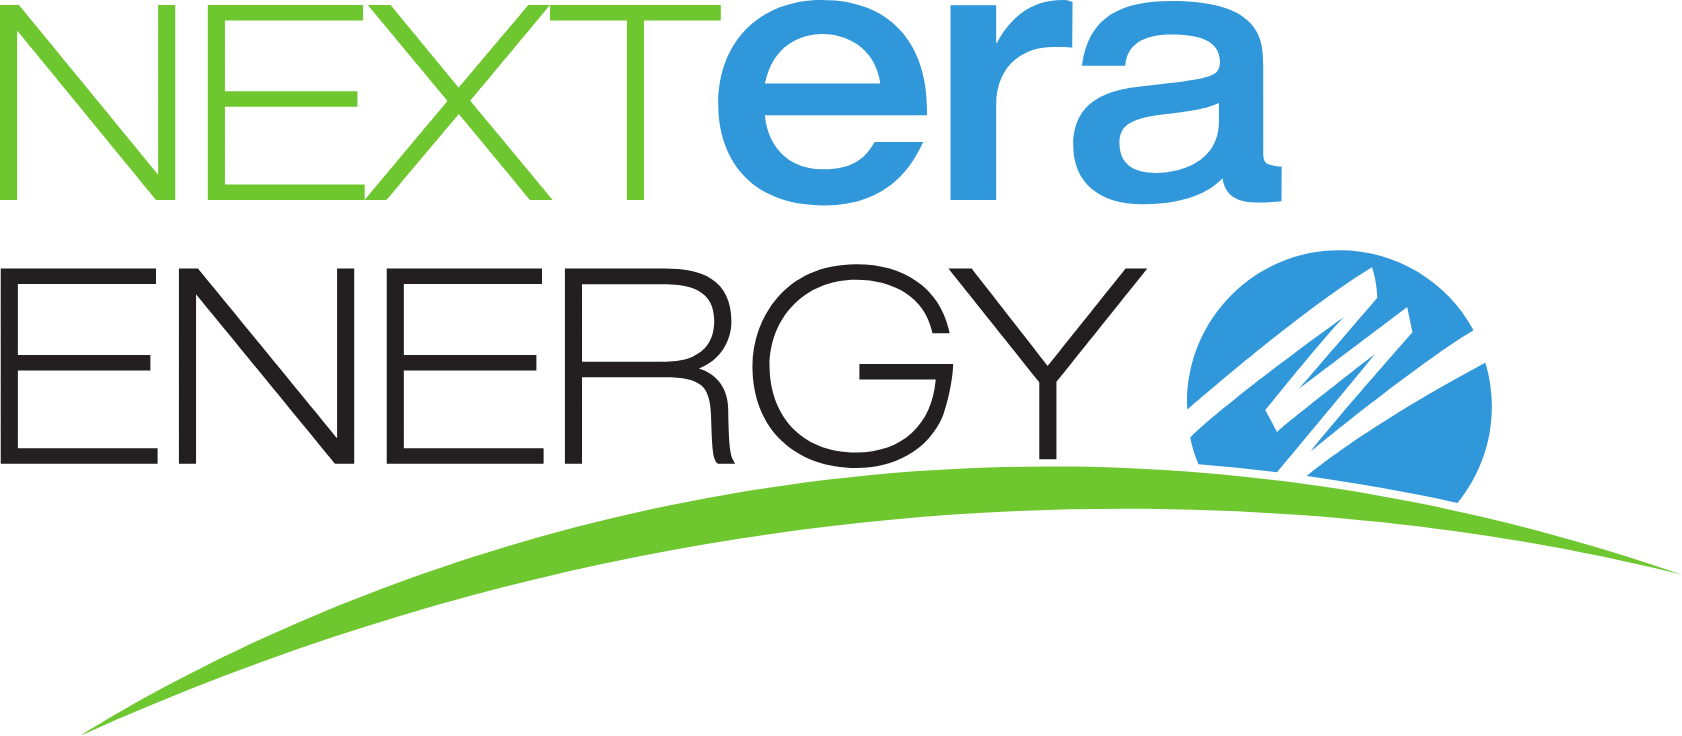 Nextera Energy logo large (transparent PNG)